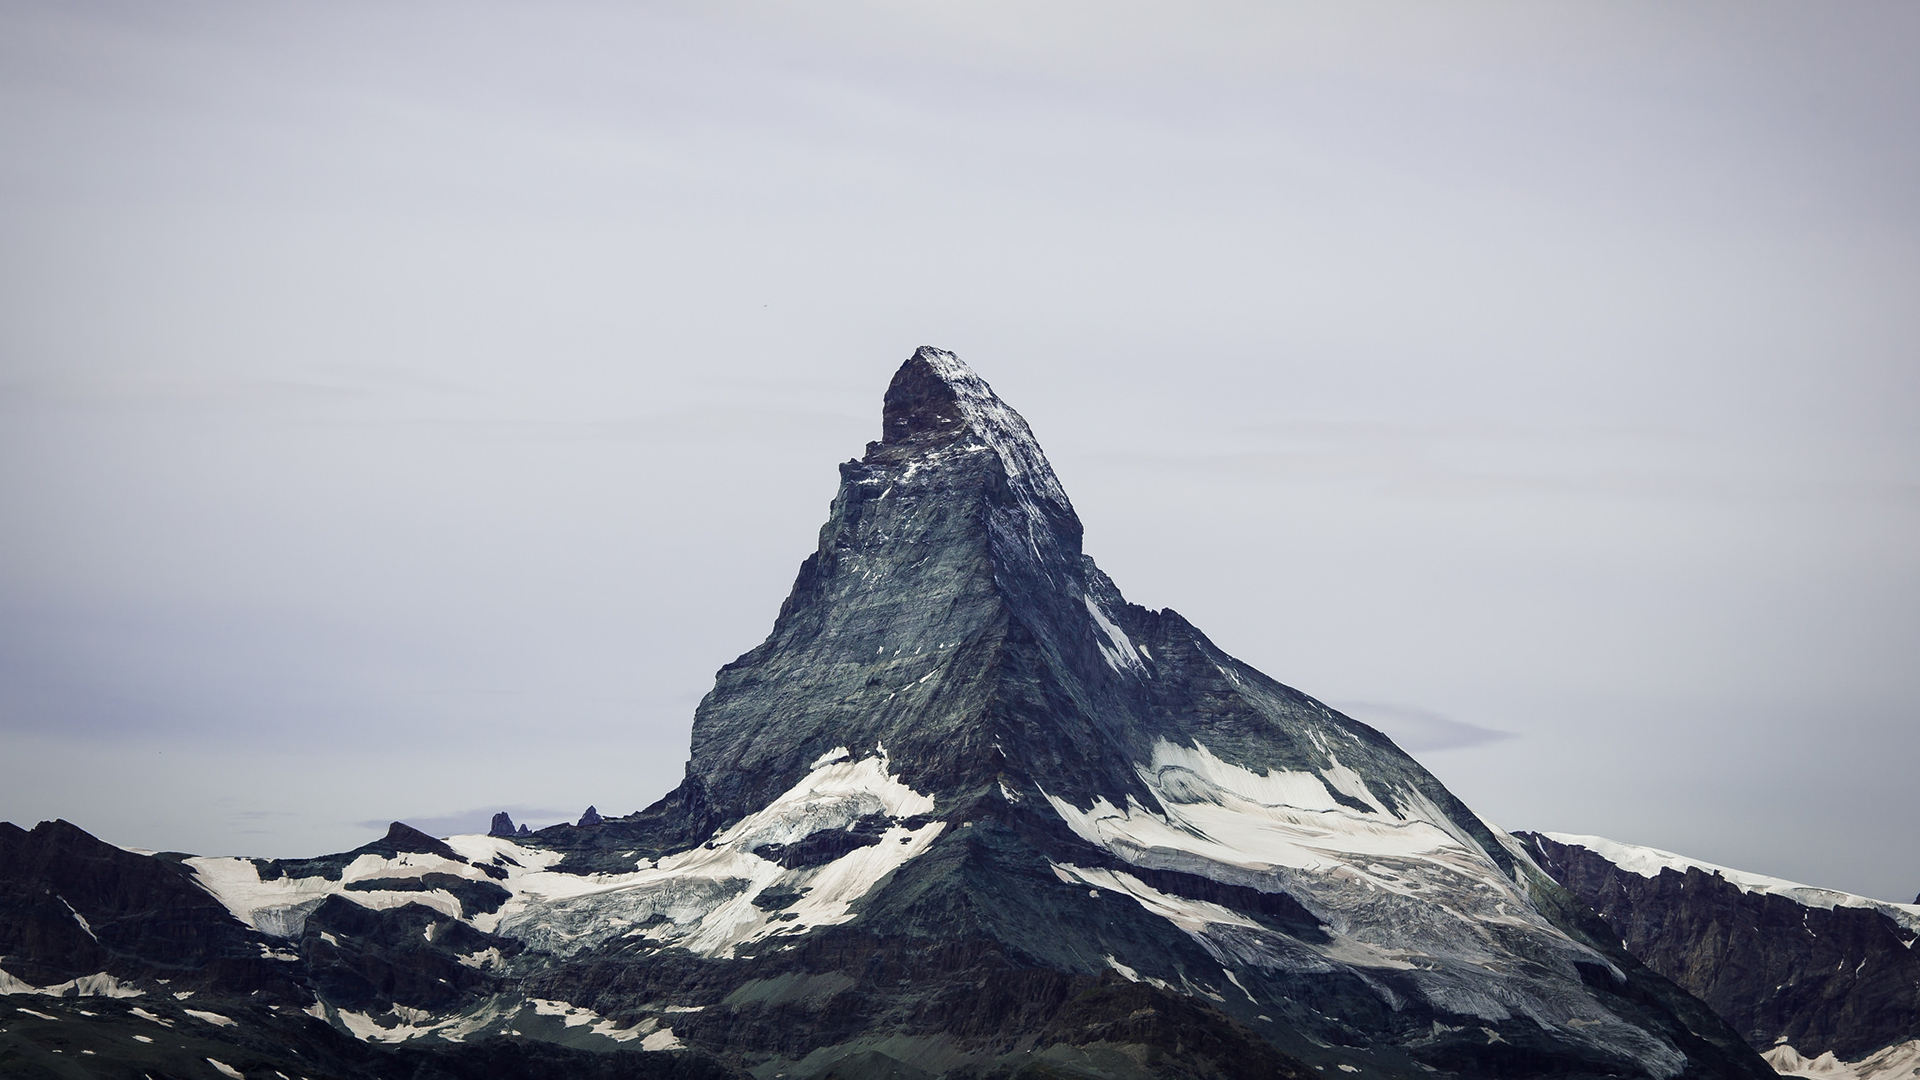 General 1920x1080 Matterhorn mountains Switzerland nature